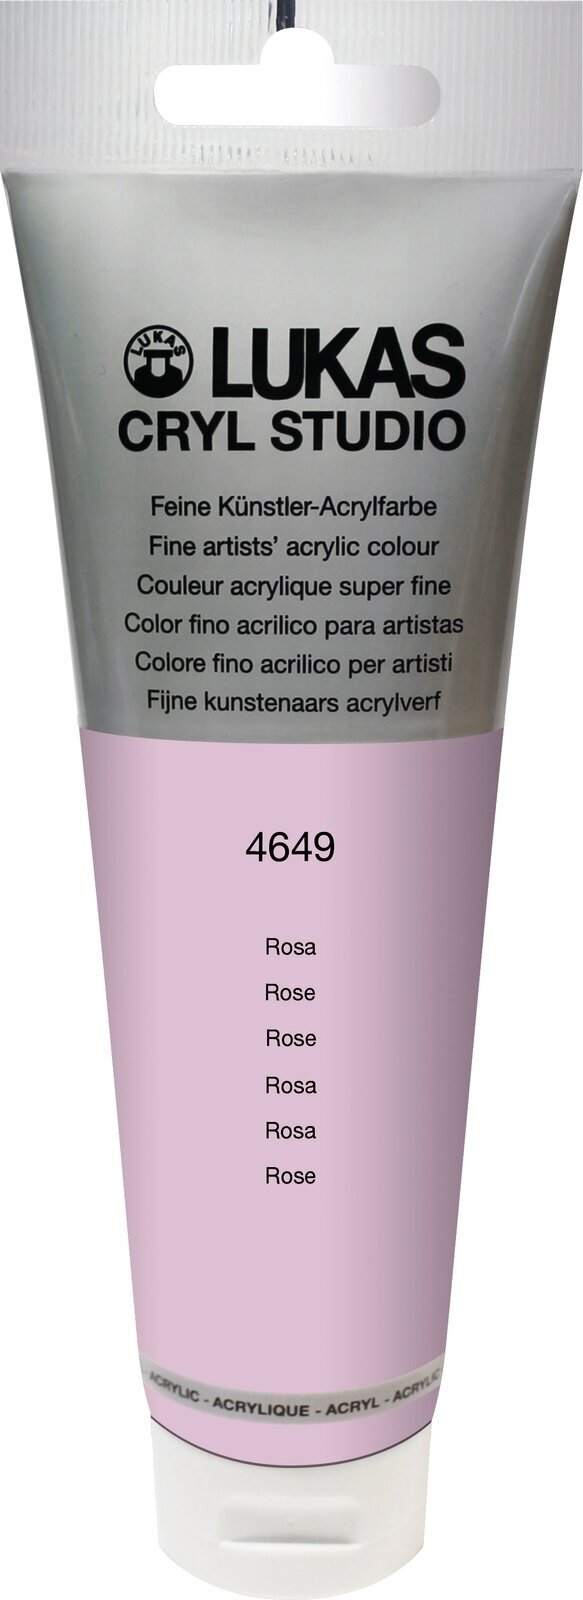 Acrylfarbe Lukas Cryl Studio Acrylic Paint Plastic Tube Acrylfarbe Rose 125 ml 1 Stck